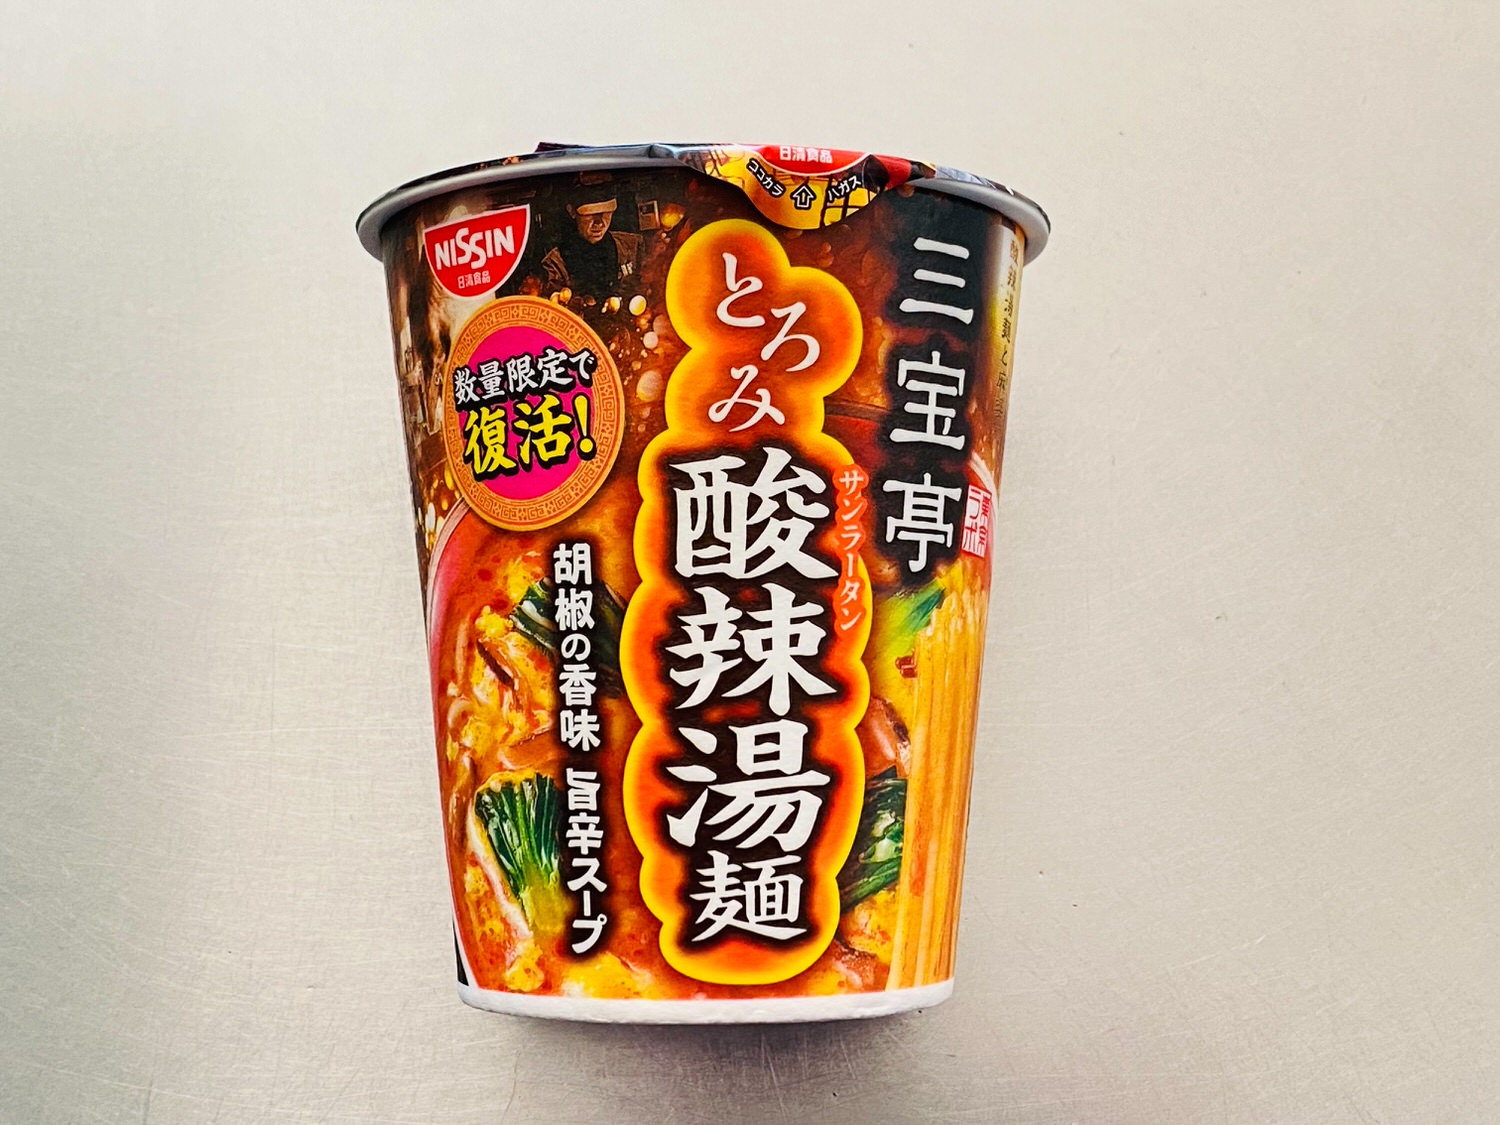 三宝亭「全とろ麻婆麺」「とろみ酸辣湯麺」 16001